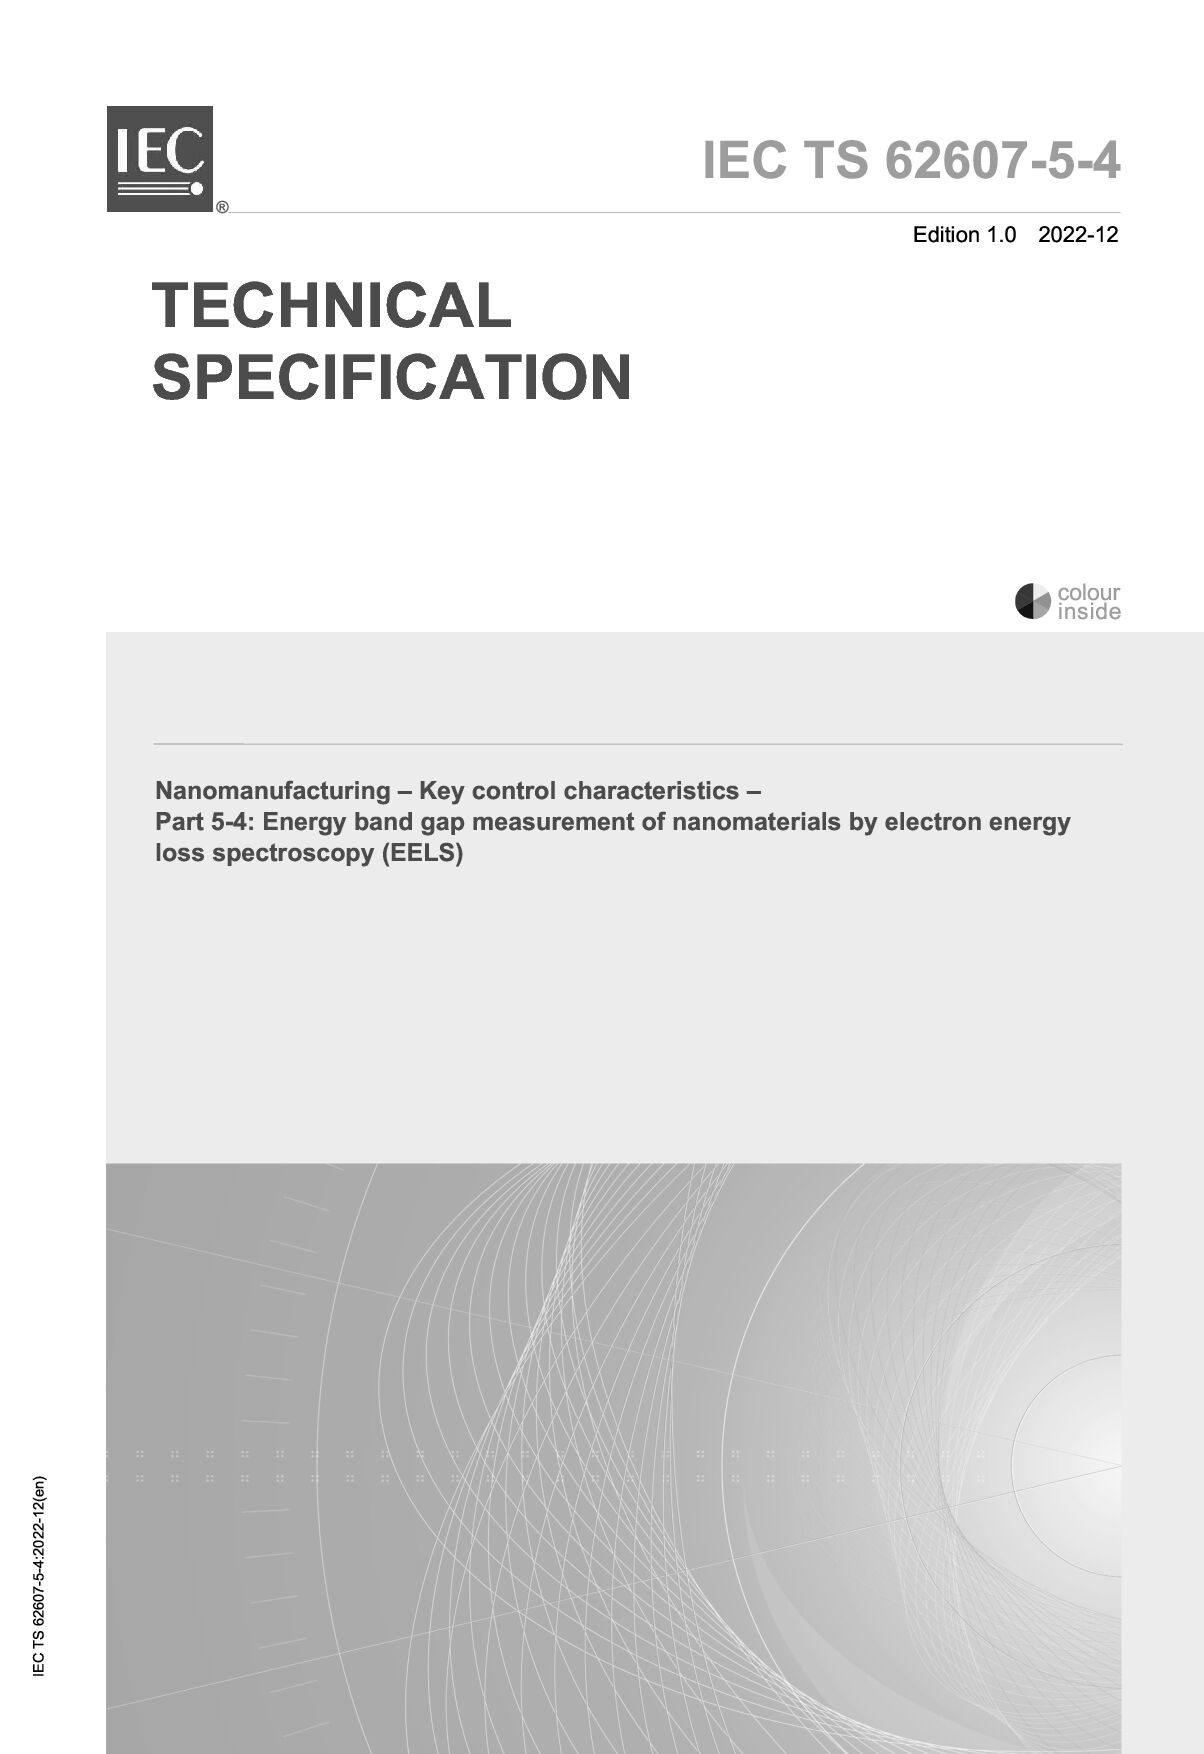 IEC TS 62607-5-4:2022